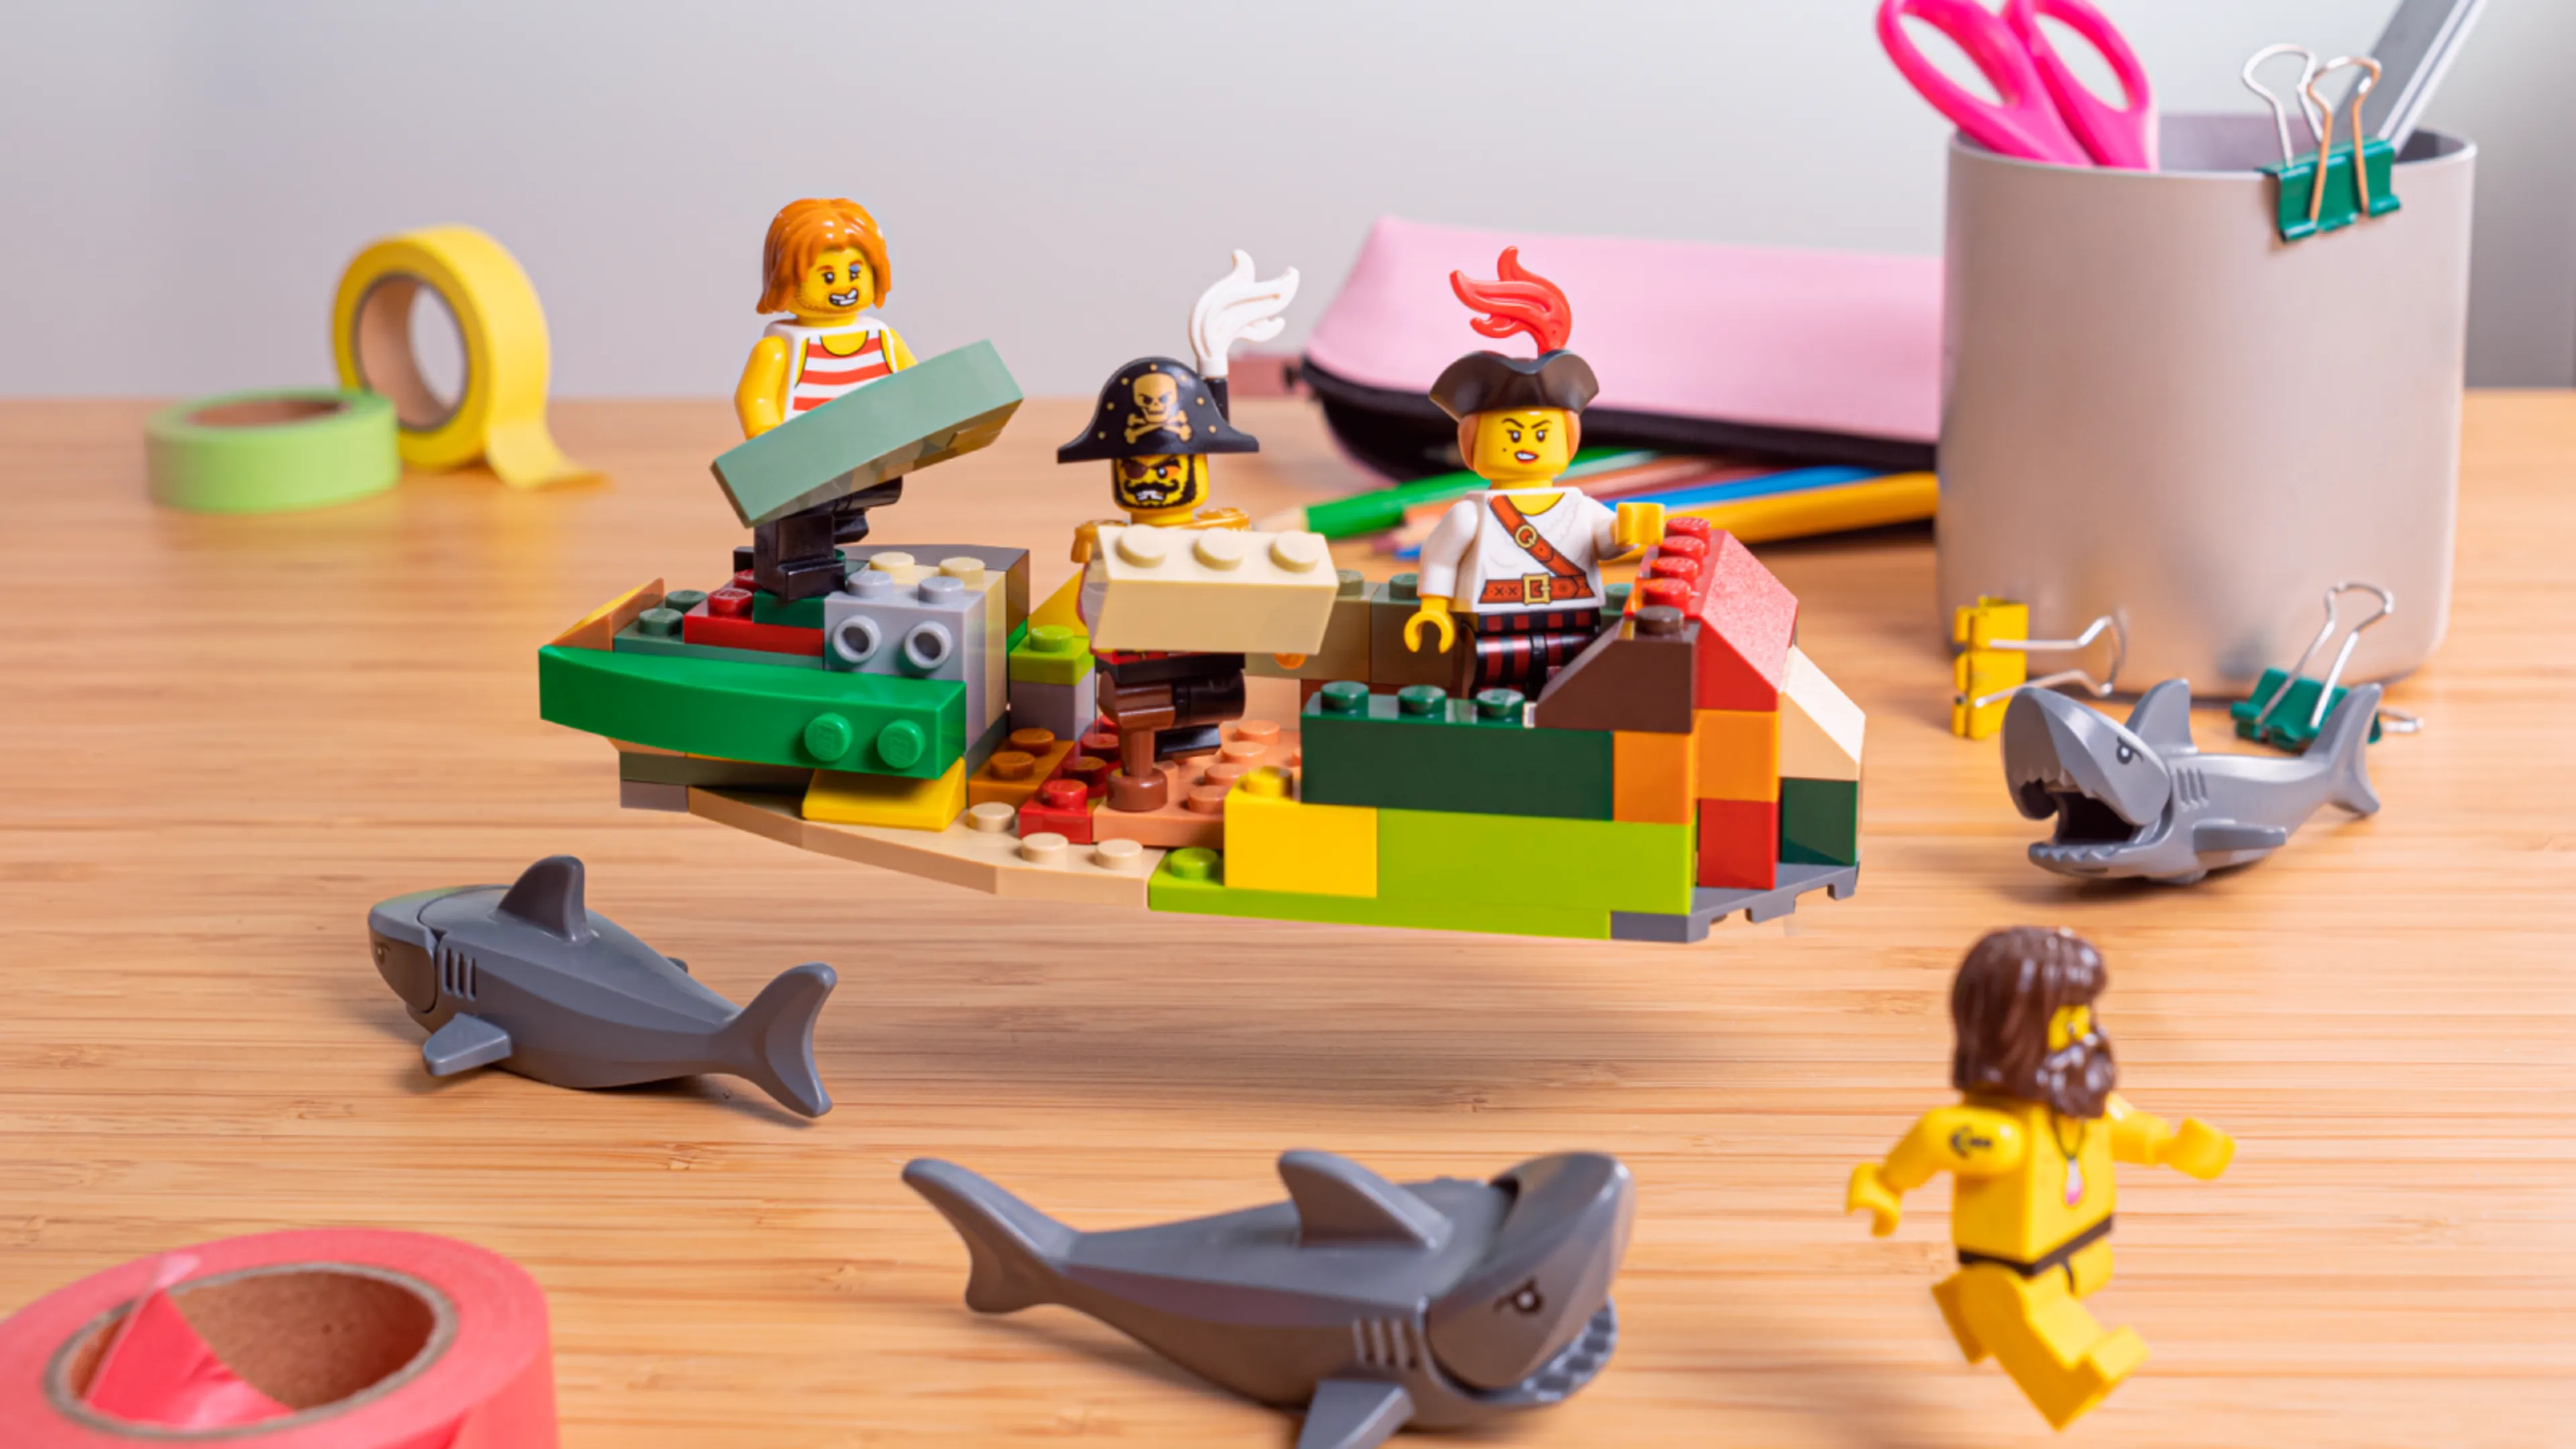 Minifiguren die de zijkanten van het schip bouwen, omringd door haaien